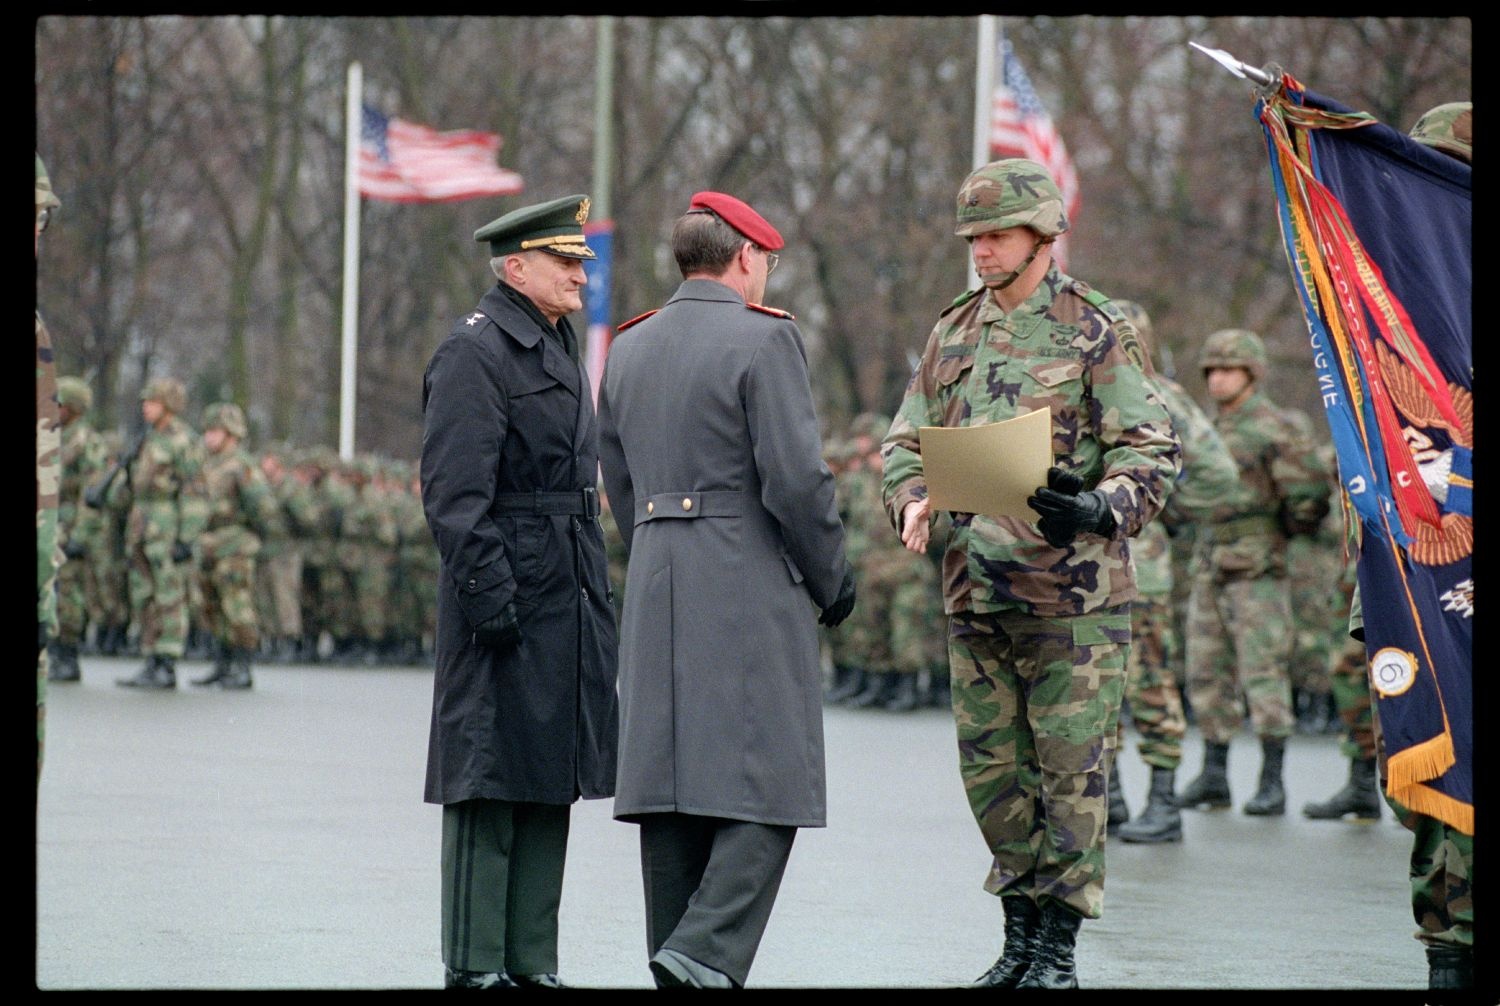 Fotografie: Verleihung des Fahnenbandes der Bundesrepublik Deutschland an Einheiten der U.S. Army Berlin in Berlin-Lichterfelde